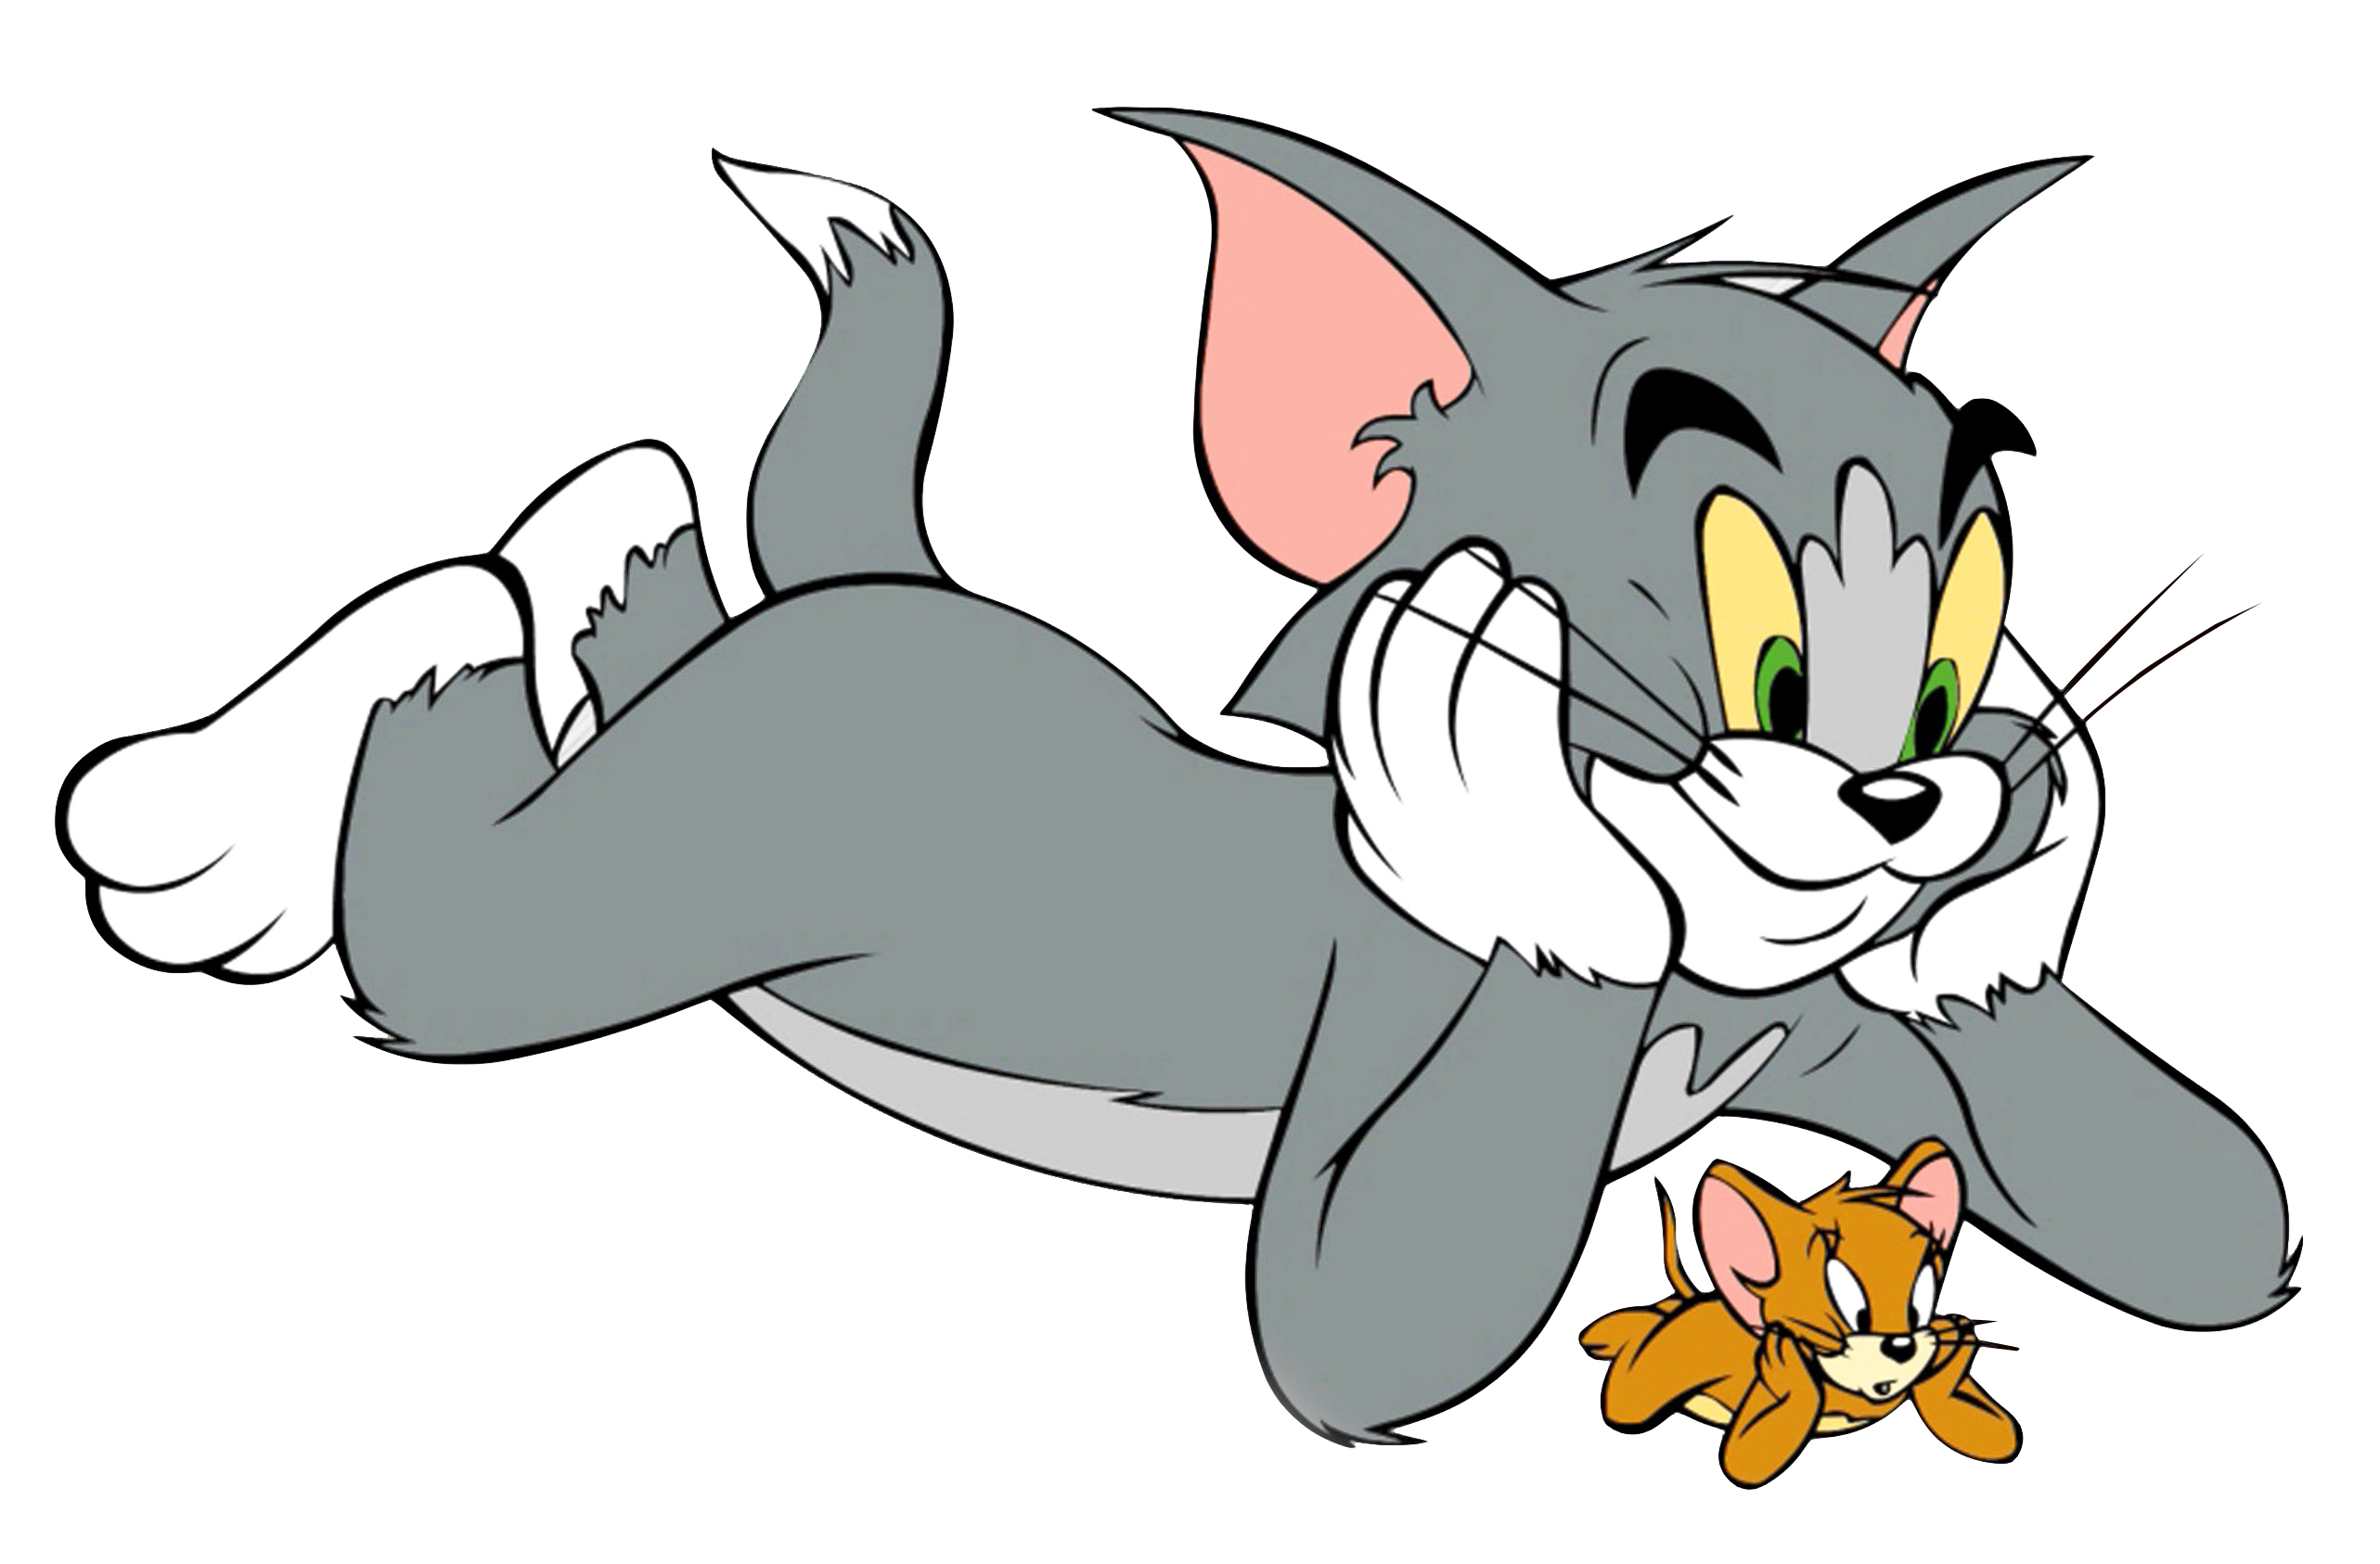 Jerry том и джерри. Tom and Jerry. Кот том и Джерри. Том и Джерри Джерри. Мультяшный том и Джерри.